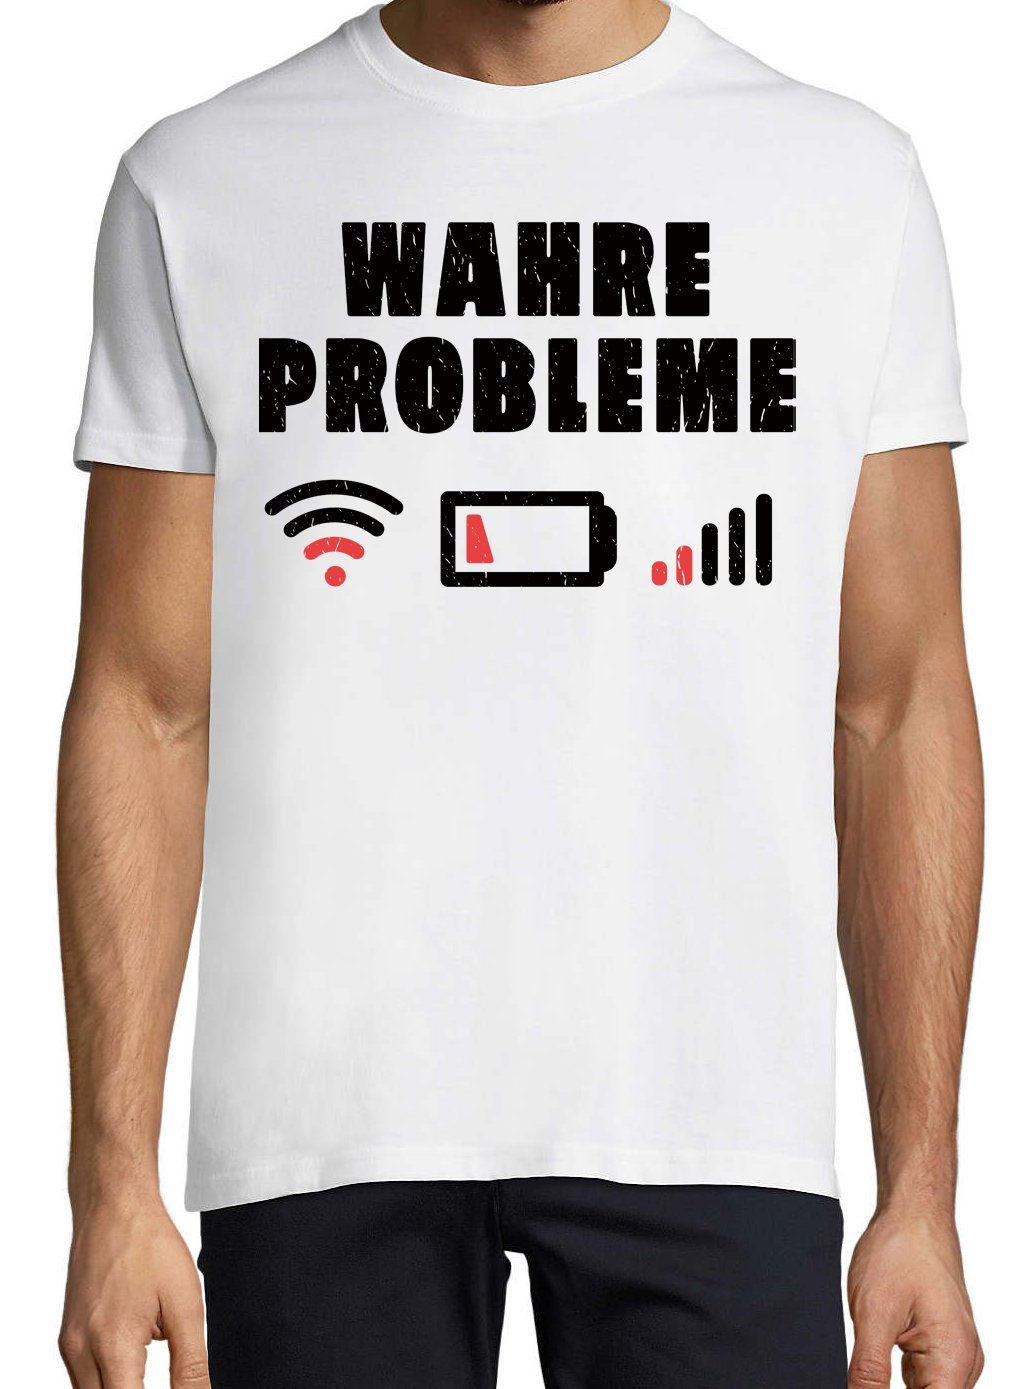 Print-Shirt "Wahre Probleme" lustigem Herren Designz Weiss mit T-Shirt Youth Spruch